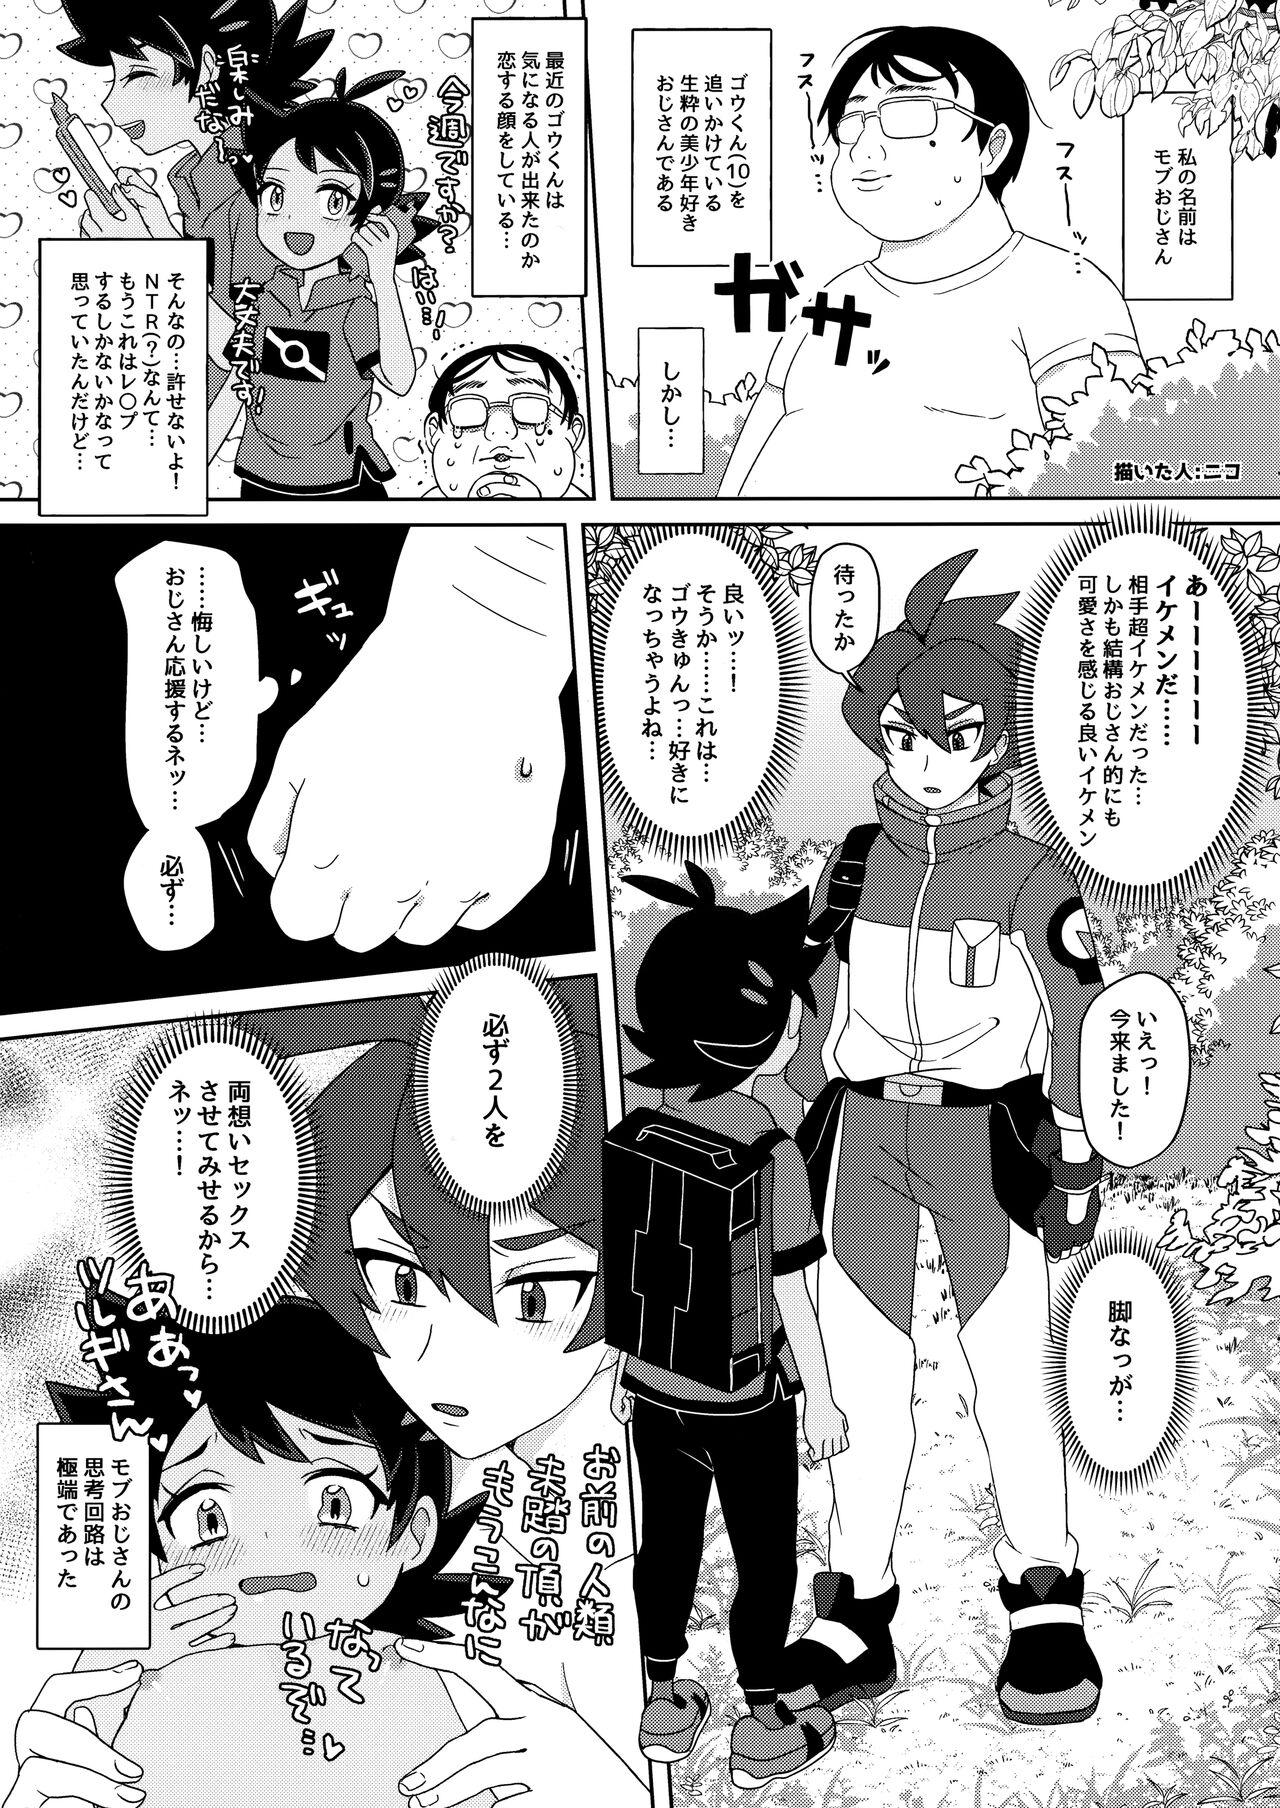 (ShotaFes12) [Chibaken, Shounen Scale, MILKBEE (Chiba, nico, 085)] Tsurugi-san to Goh-kun ga Kimeseku suru Goudoushi (Pokémon Journeys) 9